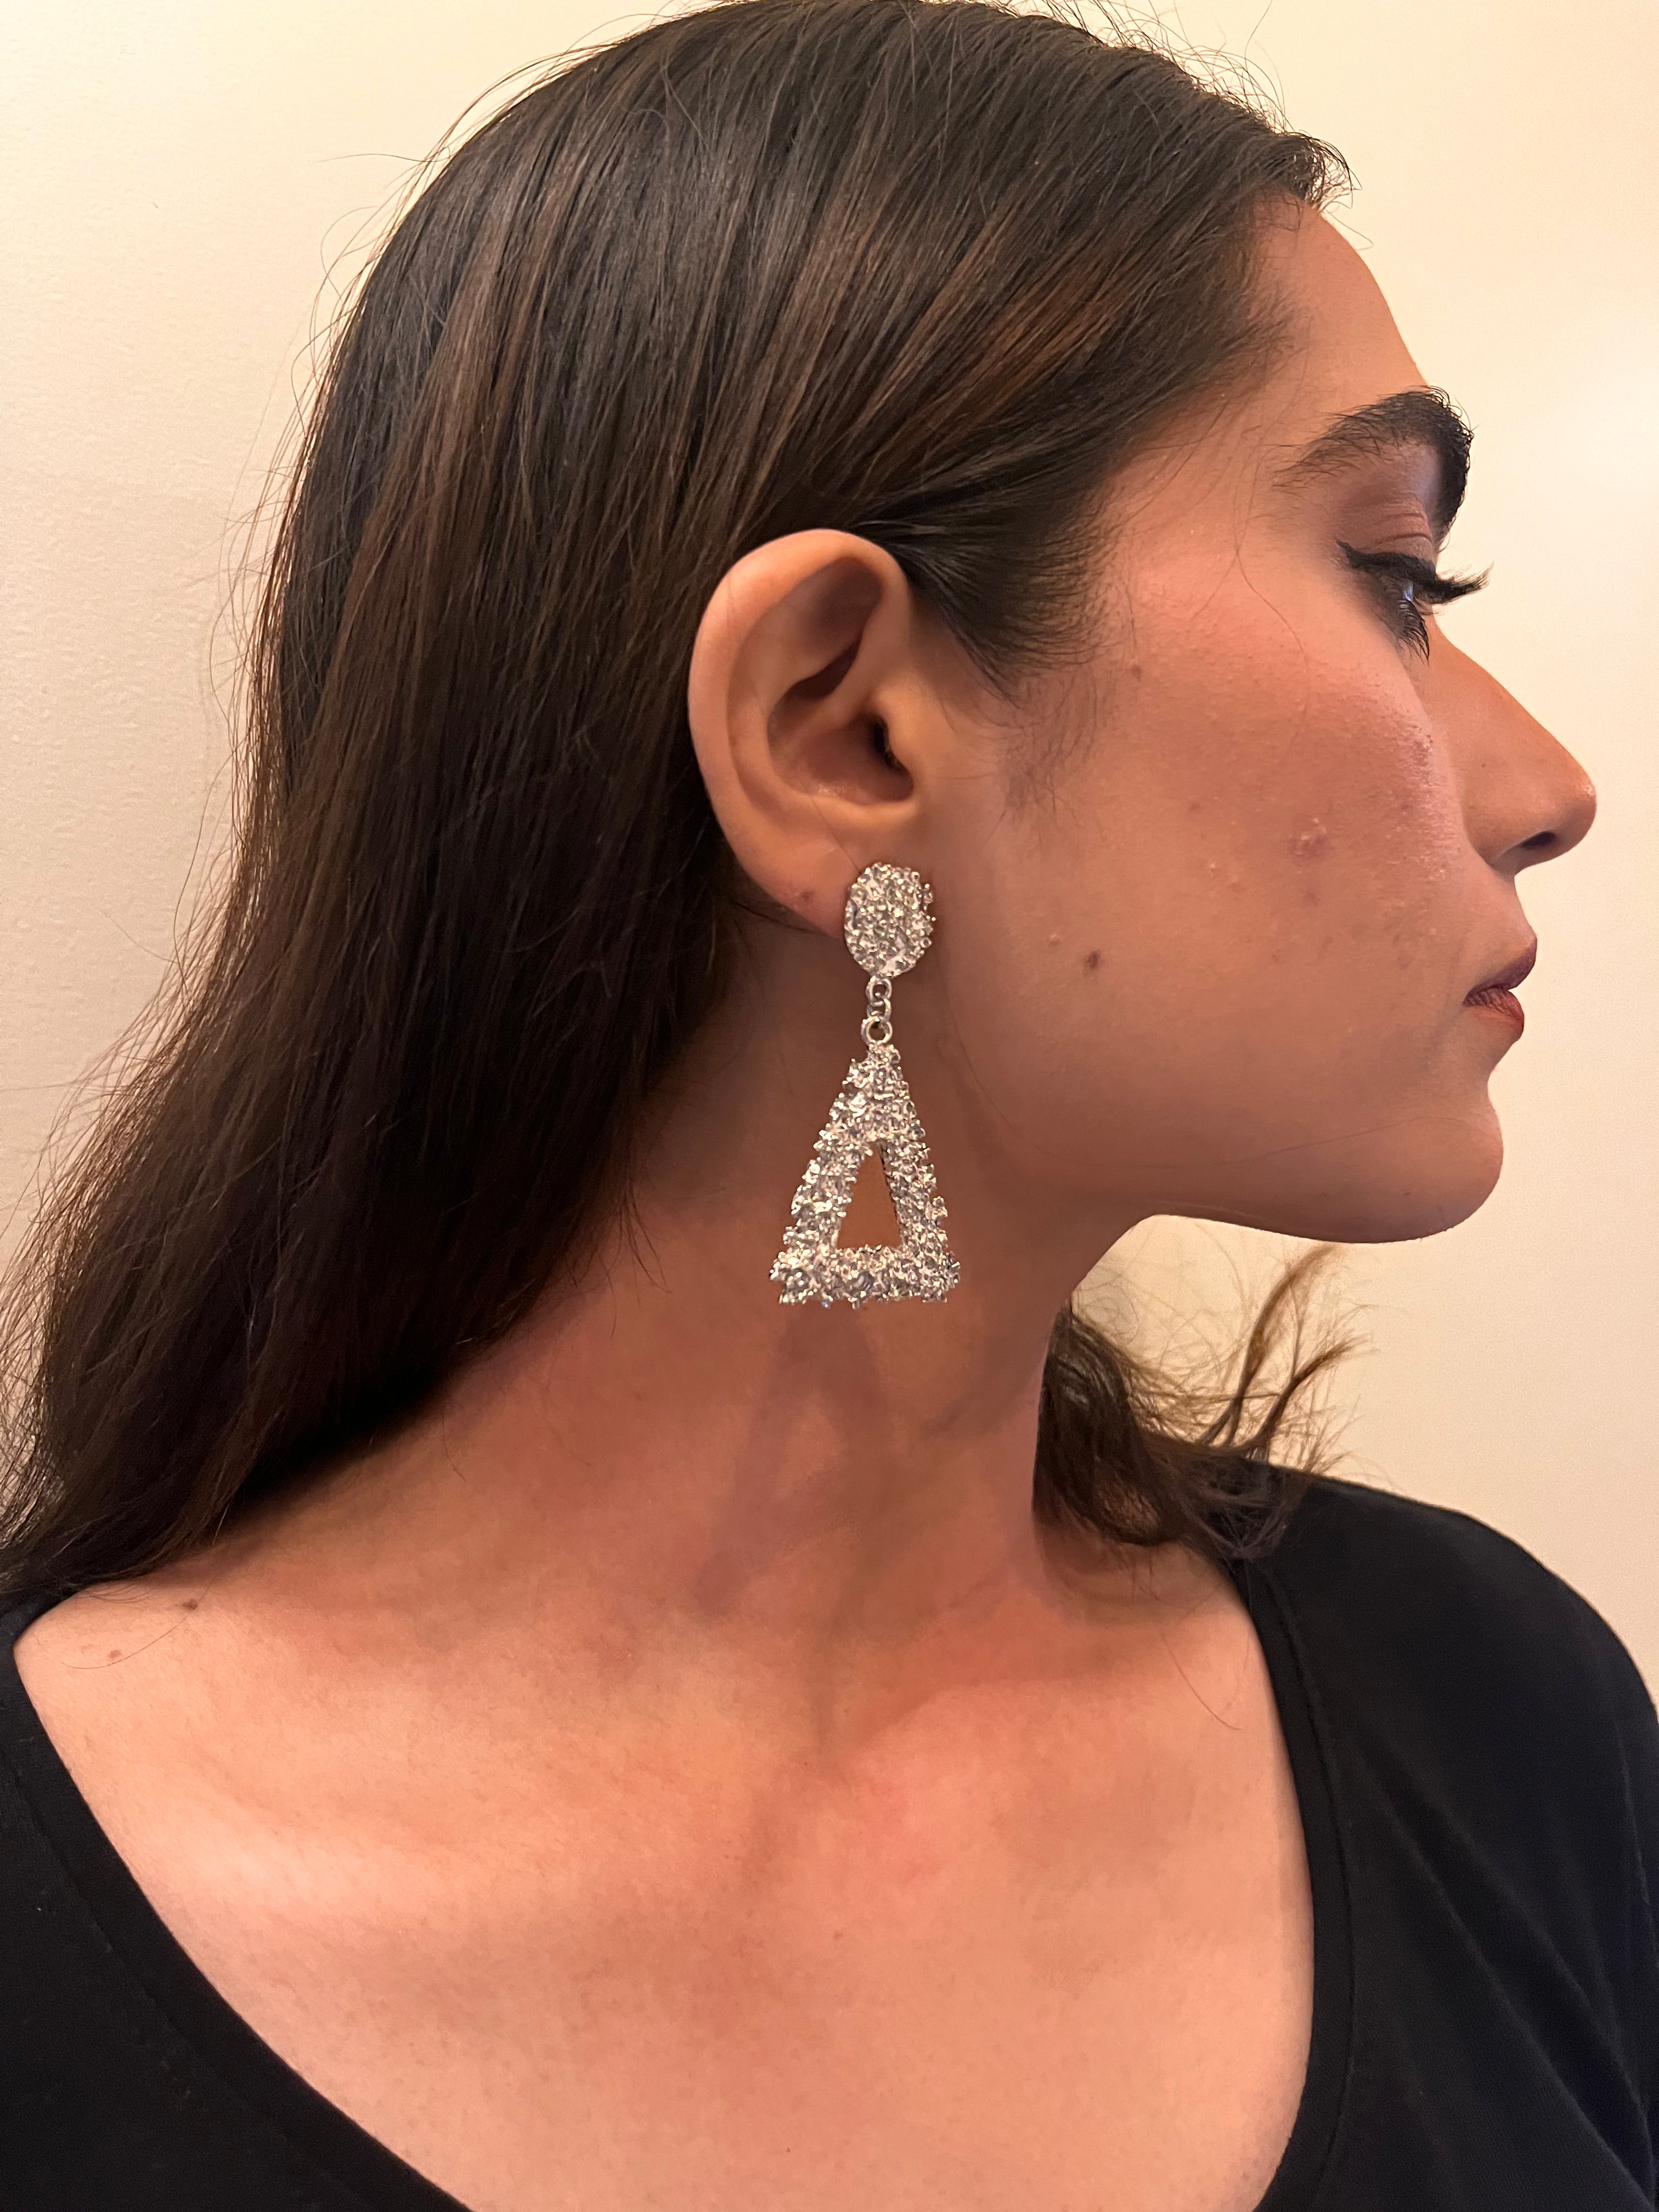 Acapella Earrings (Silver)